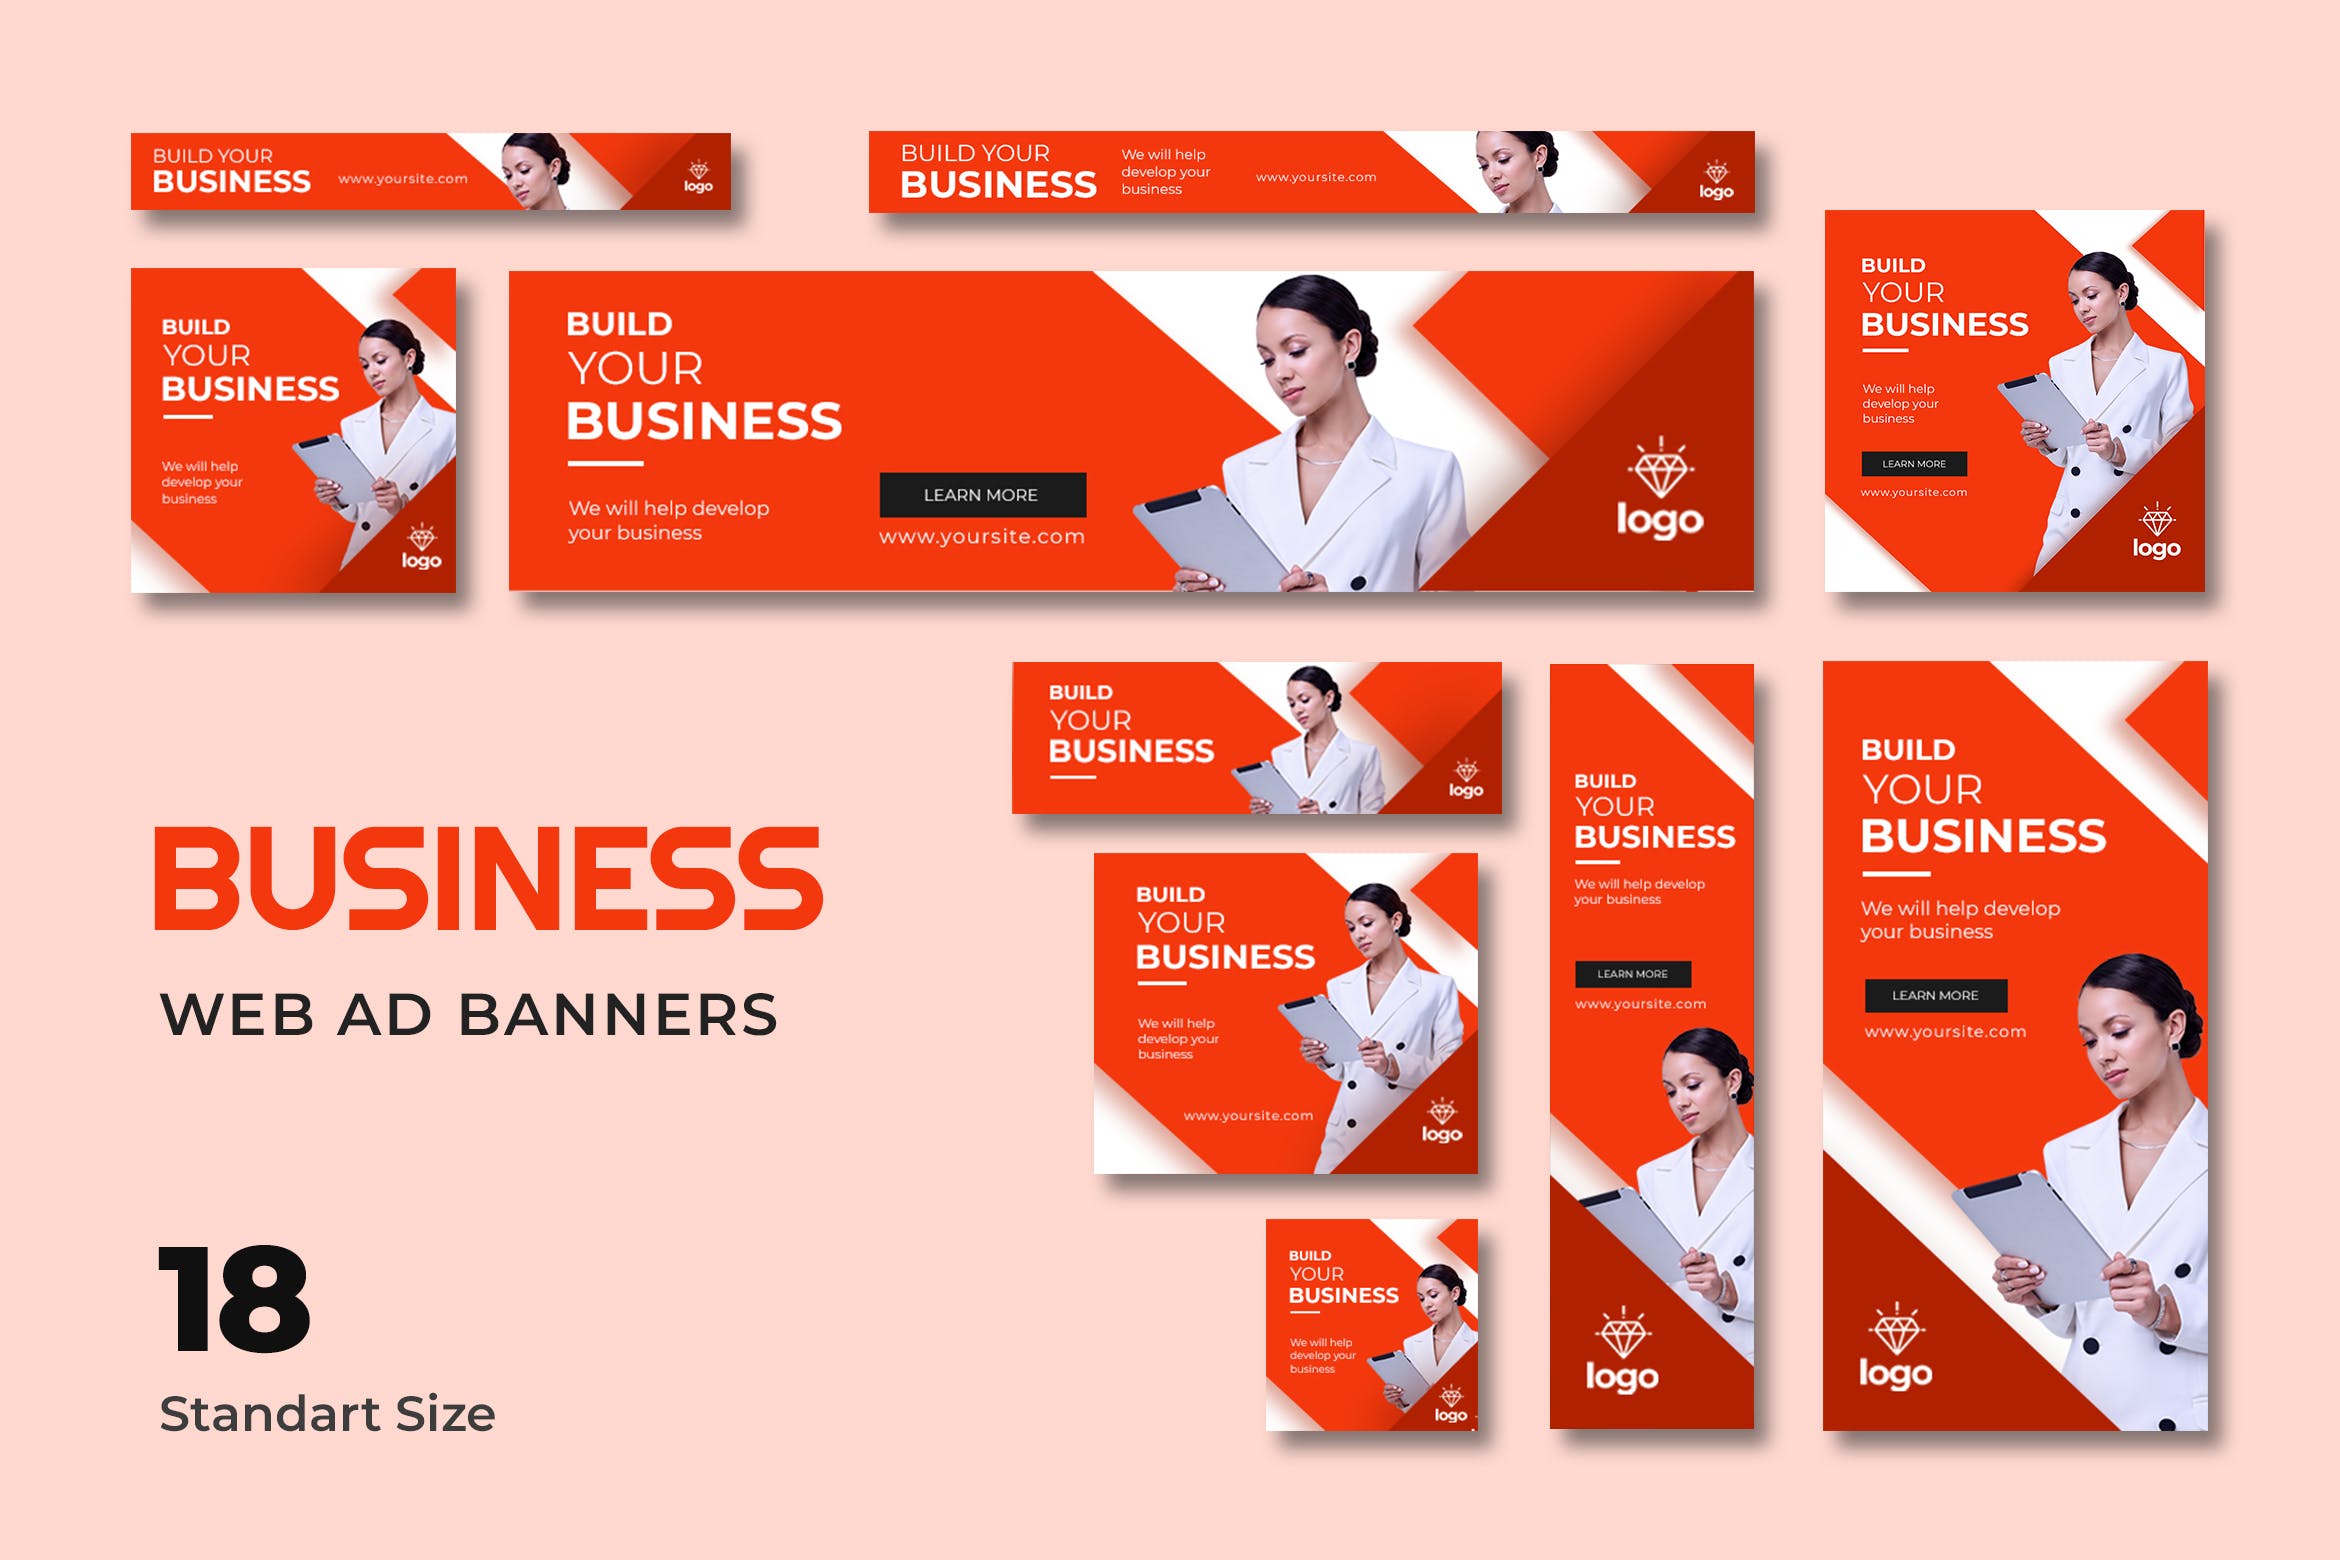 18种标准尺寸公司业务推广网站广告Banner设计模板 Business Web Banner插图